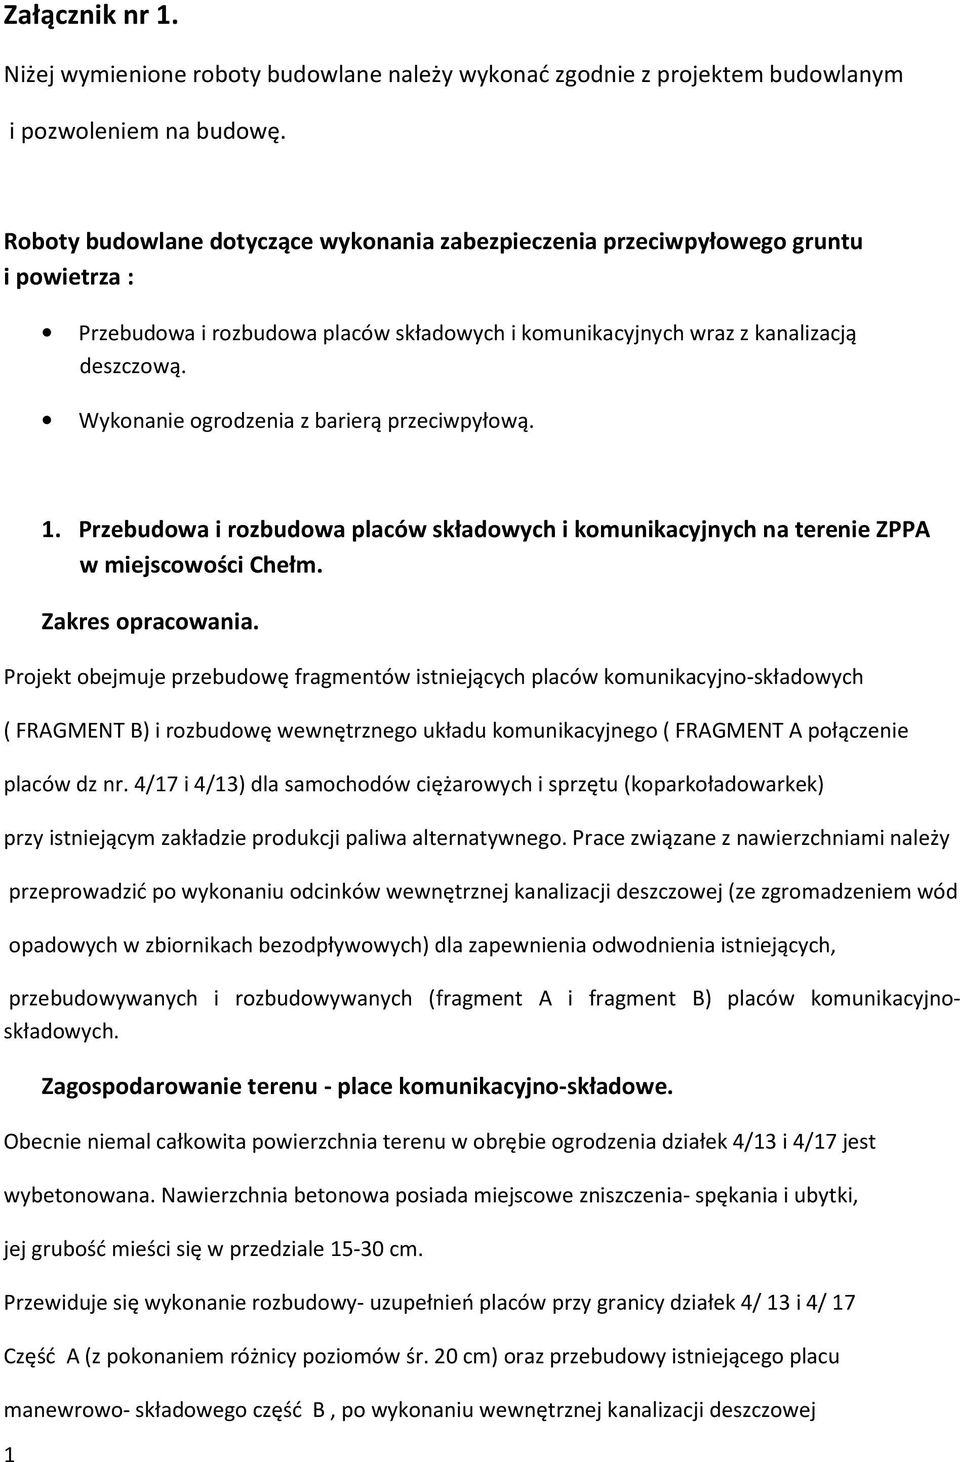 Wykonanie ogrodzenia z barierą przeciwpyłową. 1 1. Przebudowa i rozbudowa placów składowych i komunikacyjnych na terenie ZPPA w miejscowości Chełm. Zakres opracowania.